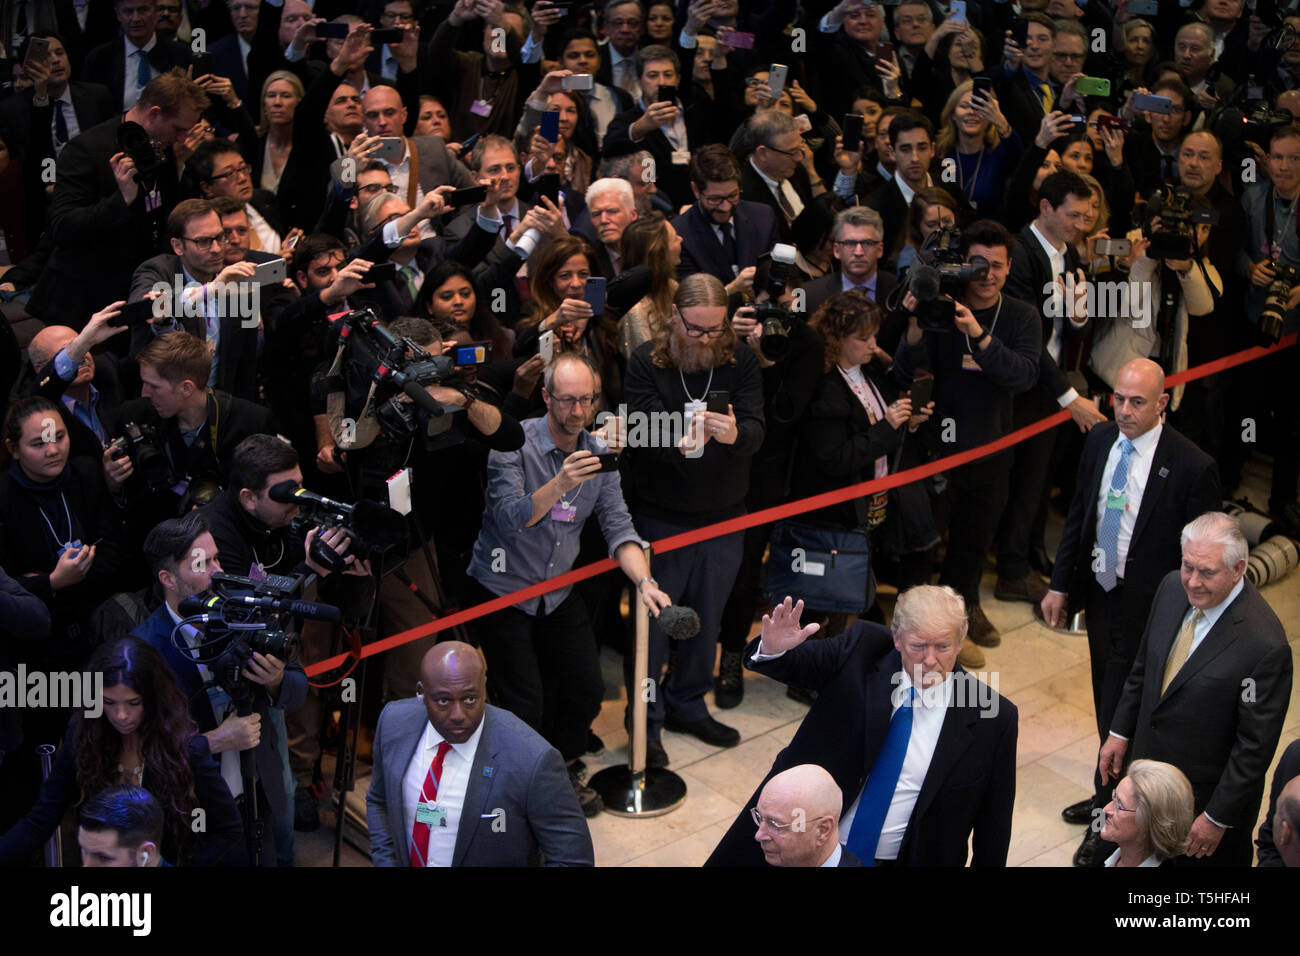 Folla enorme all'interno del Centro Congressi di Davos come il Presidente USA Trump arriva al Forum Economico Mondiale. ex Segretario di Stato Rex Tillerson cammina dietro di lui. Foto Stock